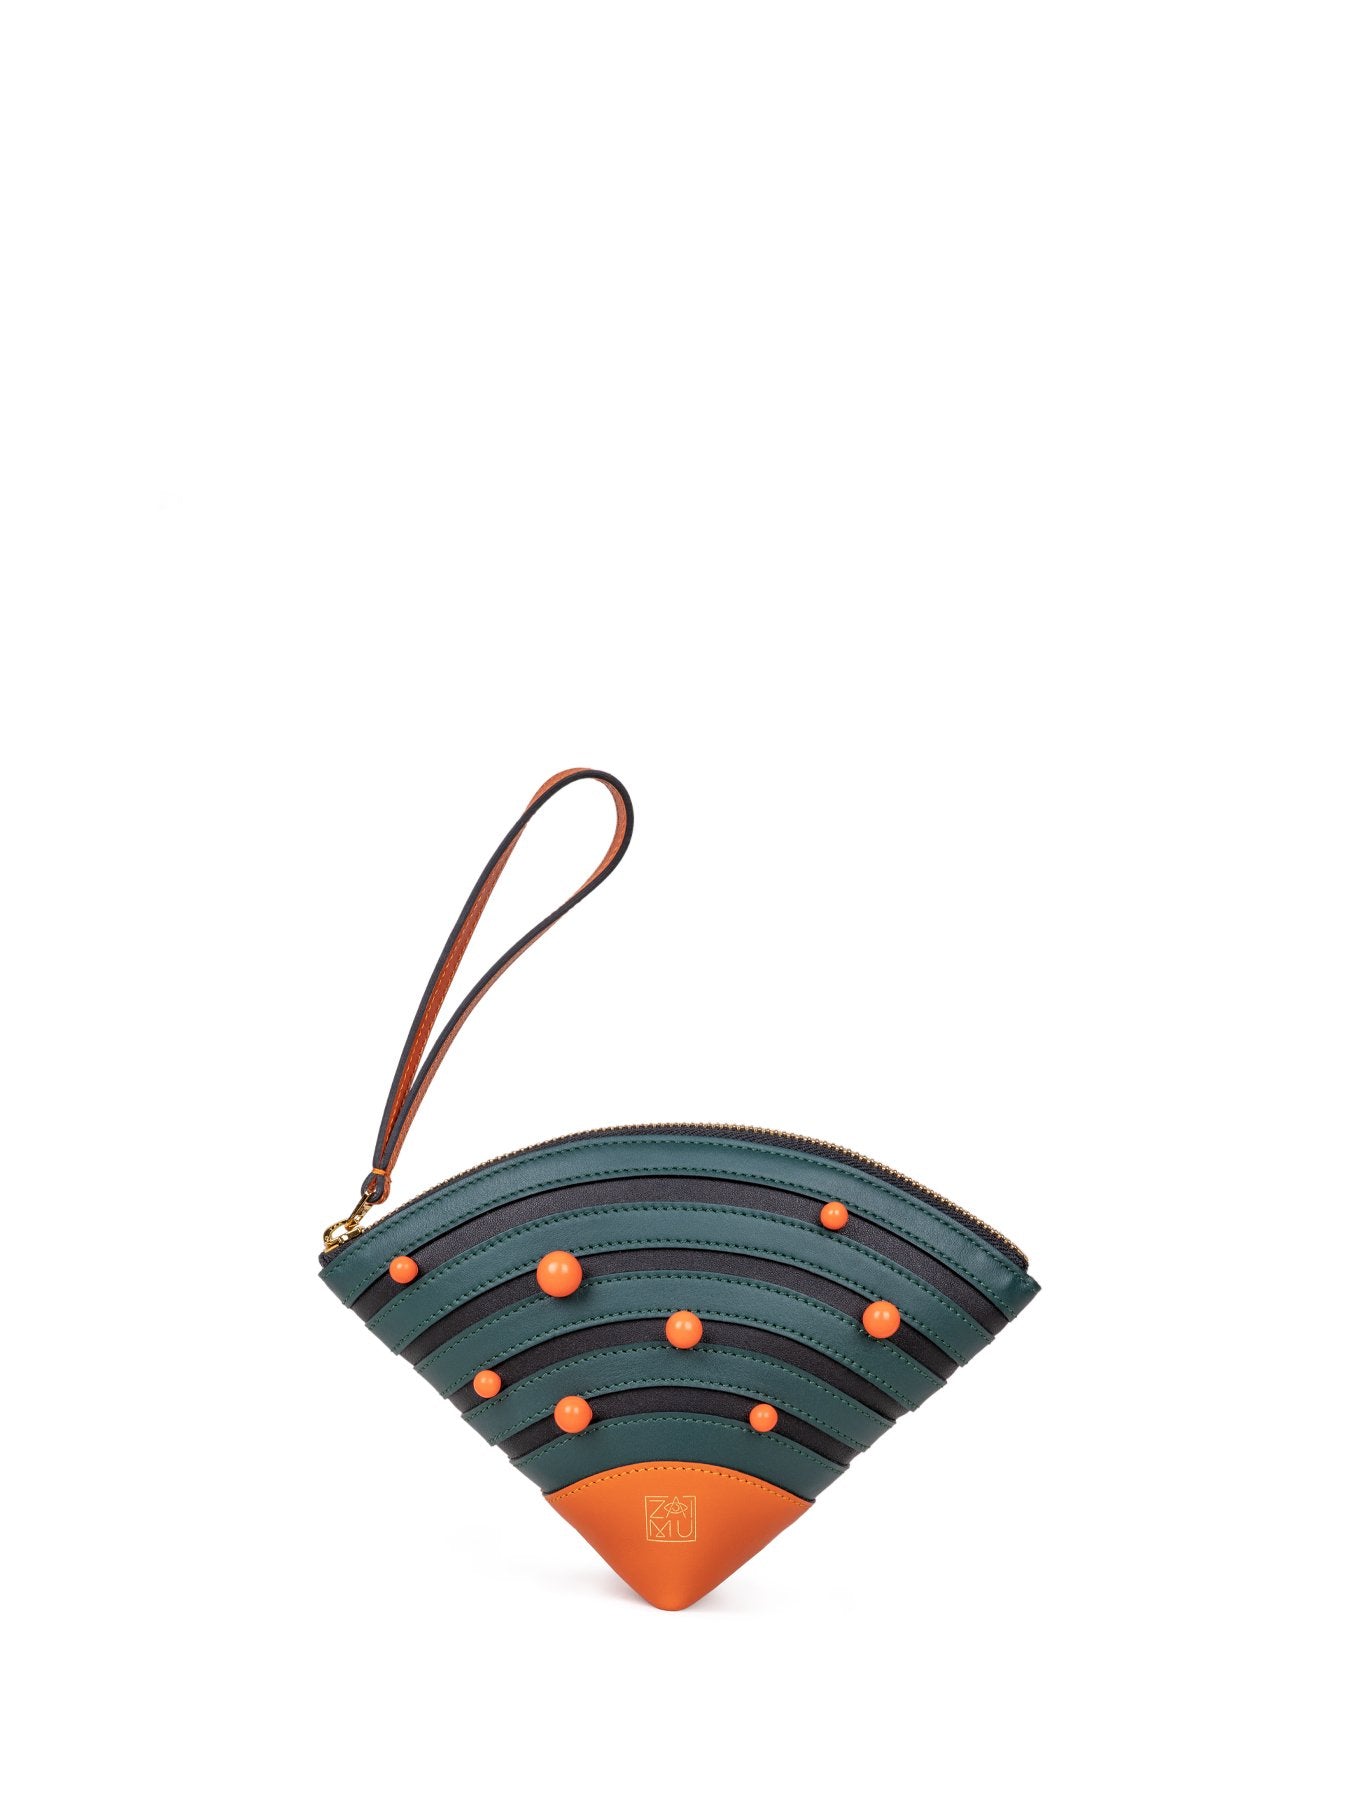 Cute Fan Clutch Bag in Moss & Orange Color